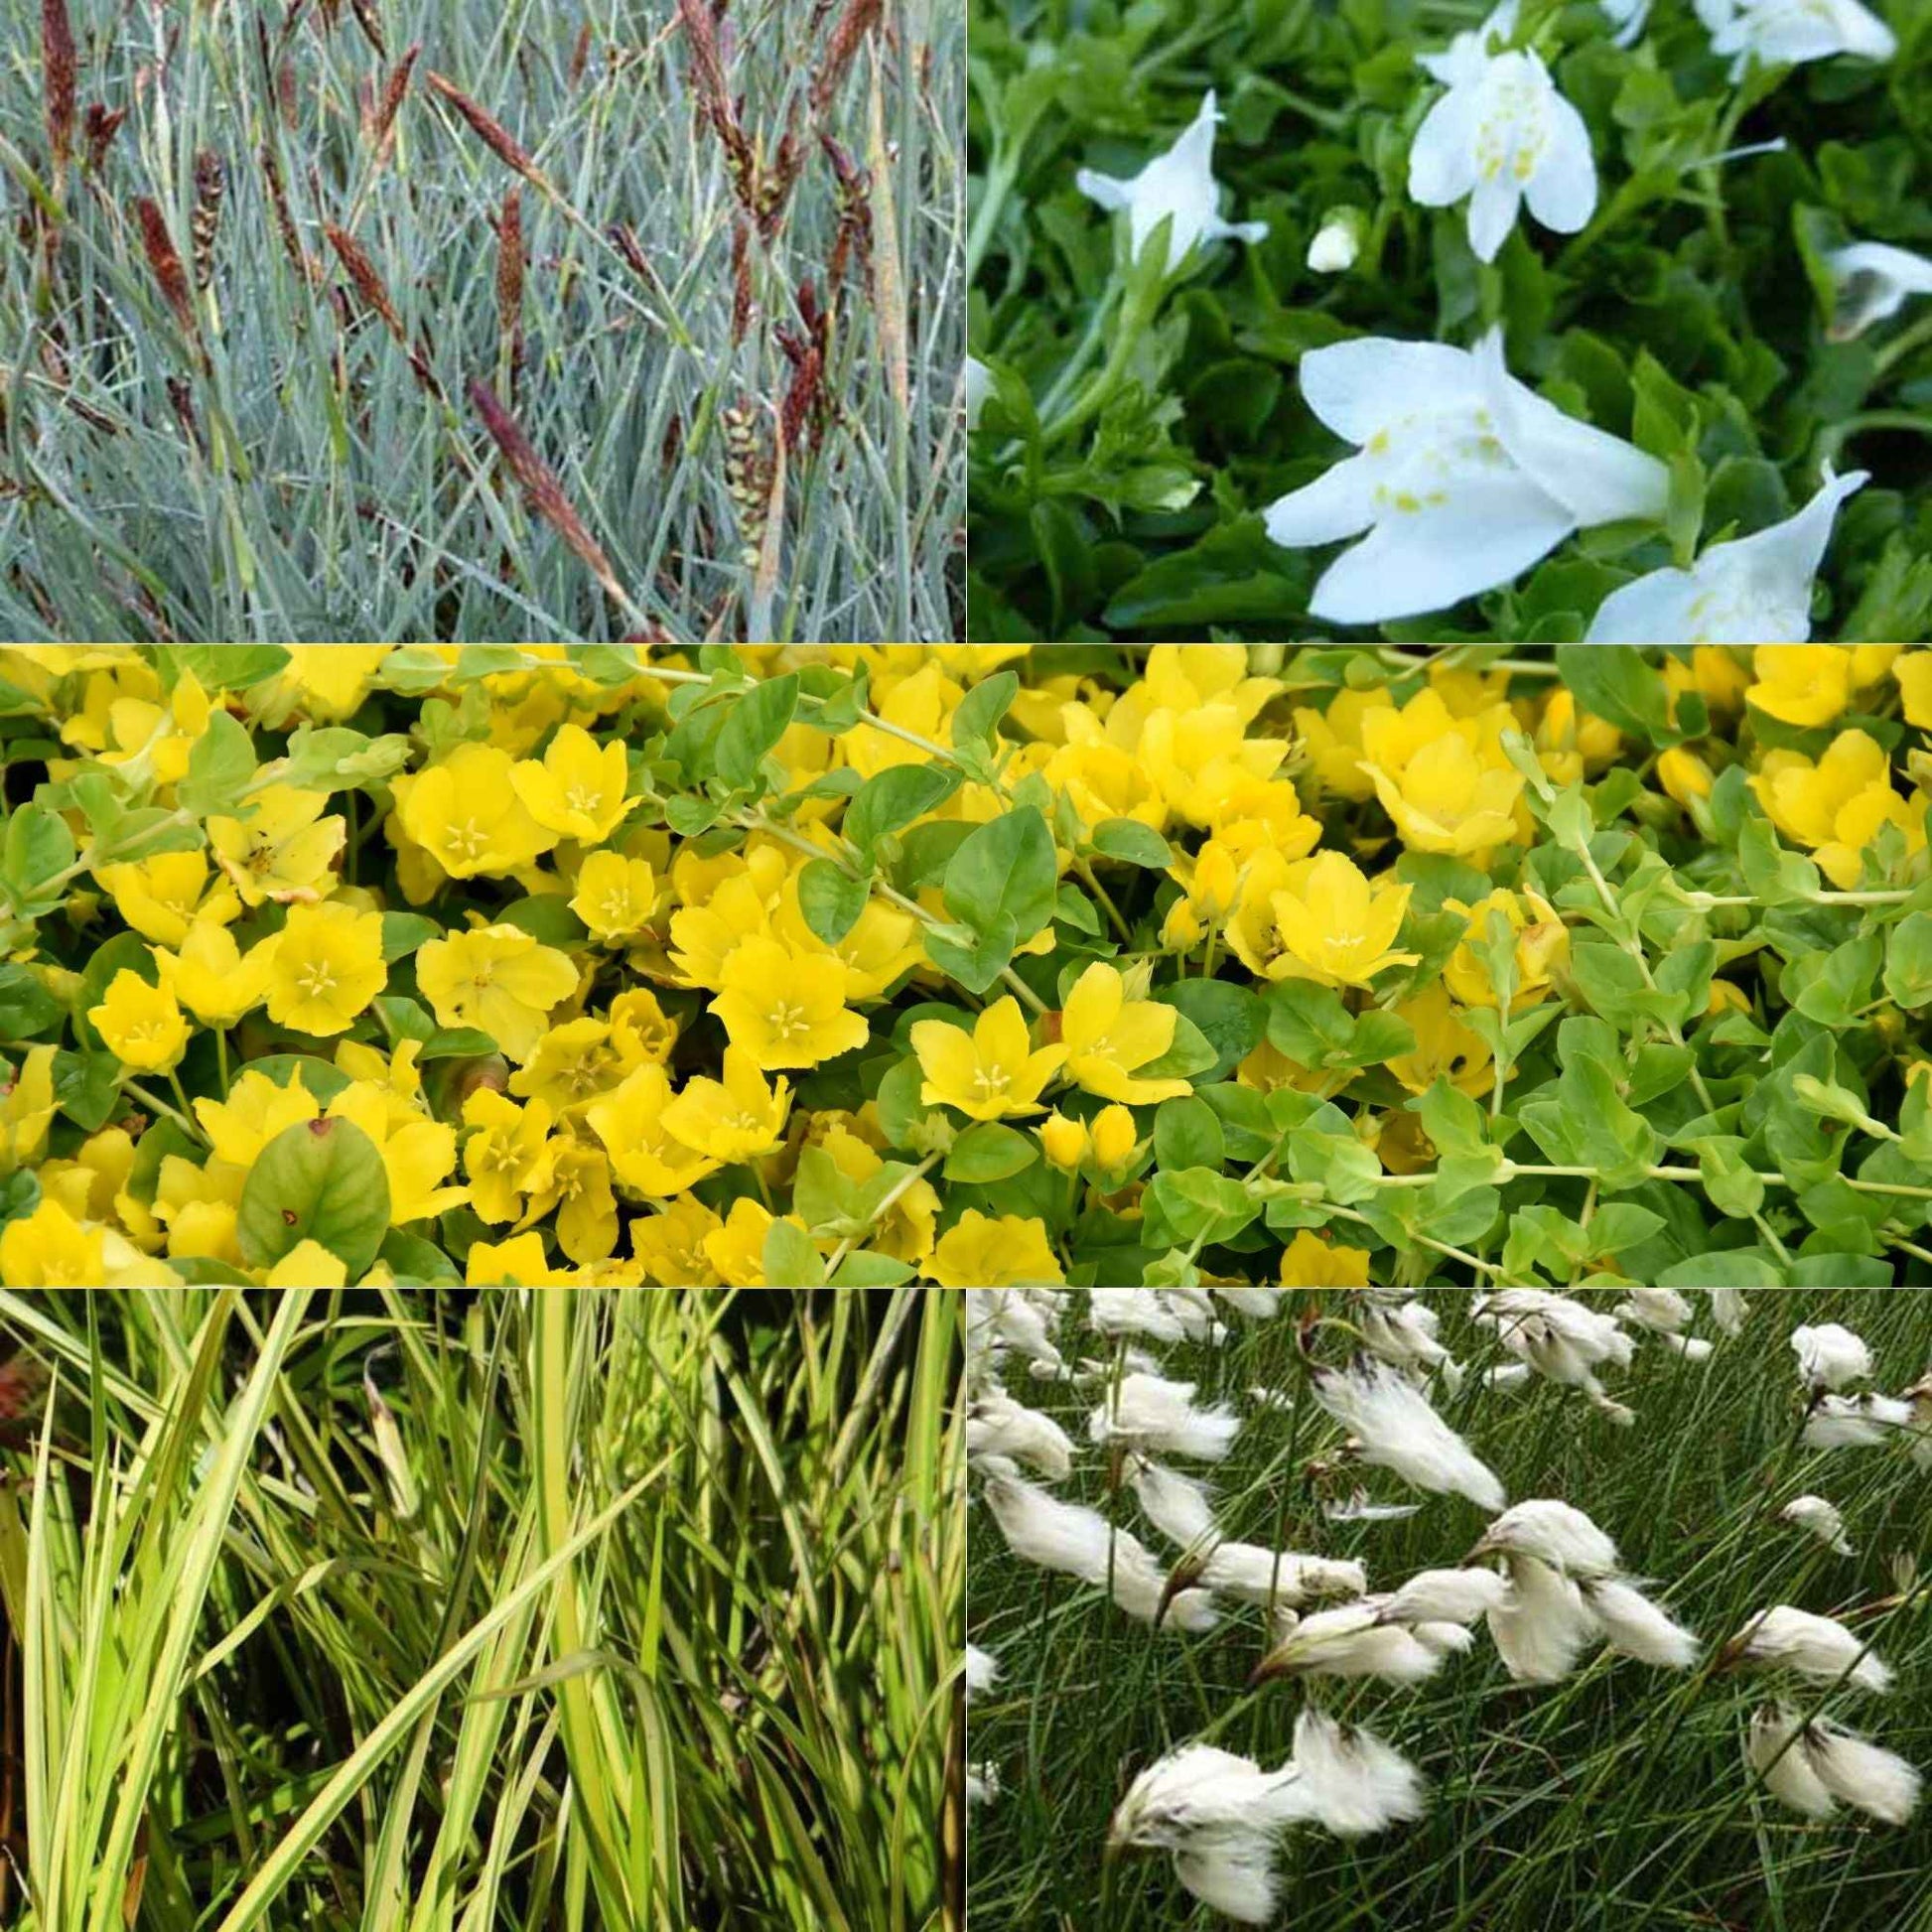 Insektenfreundliche Teichpflanzen in Mischung (x5) - Acorus, Carex, Eriophorum, Mazus, Lysimachia, Thulbachia - Teich